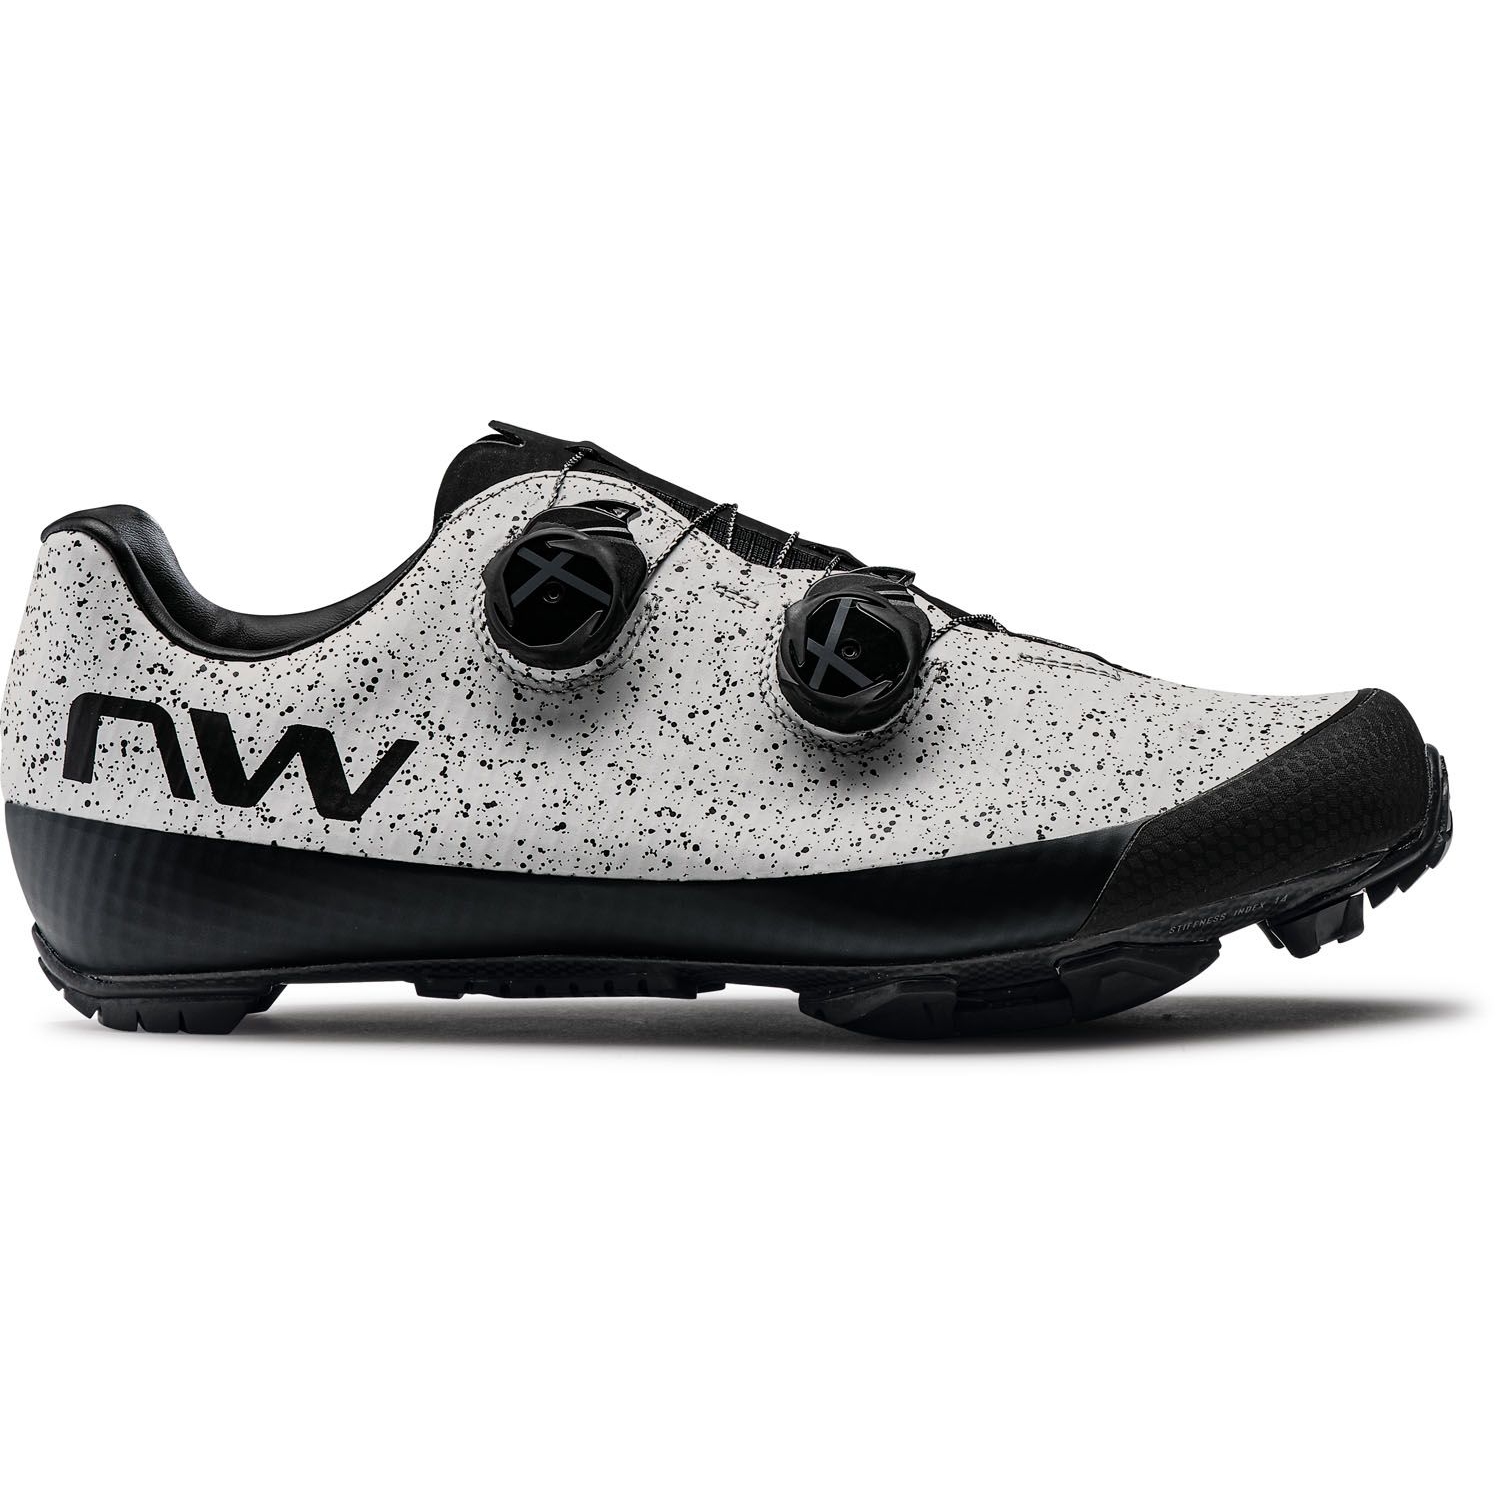 Produktbild von Northwave Extreme XC 2 MTB Schuhe - hellgrau 87 - B-Ware